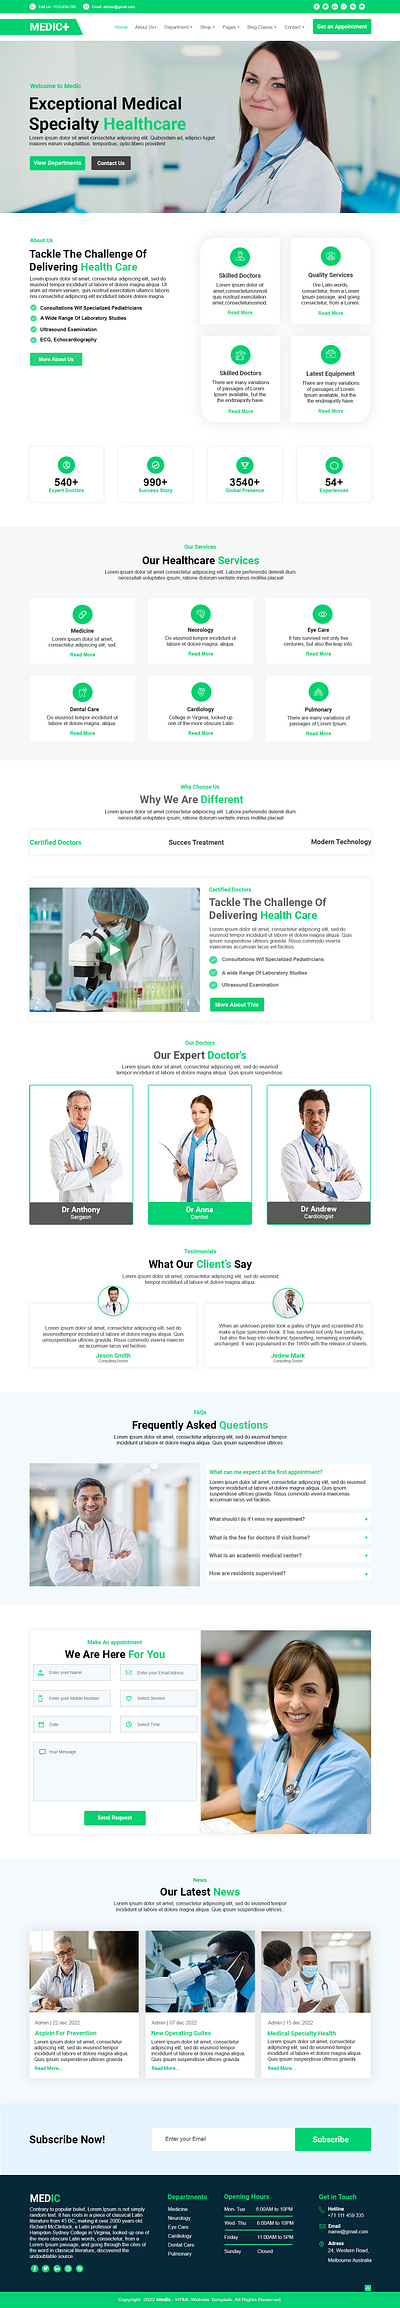 Healthcare website design usin figma a7i5sultan mobile app ui ui design website design